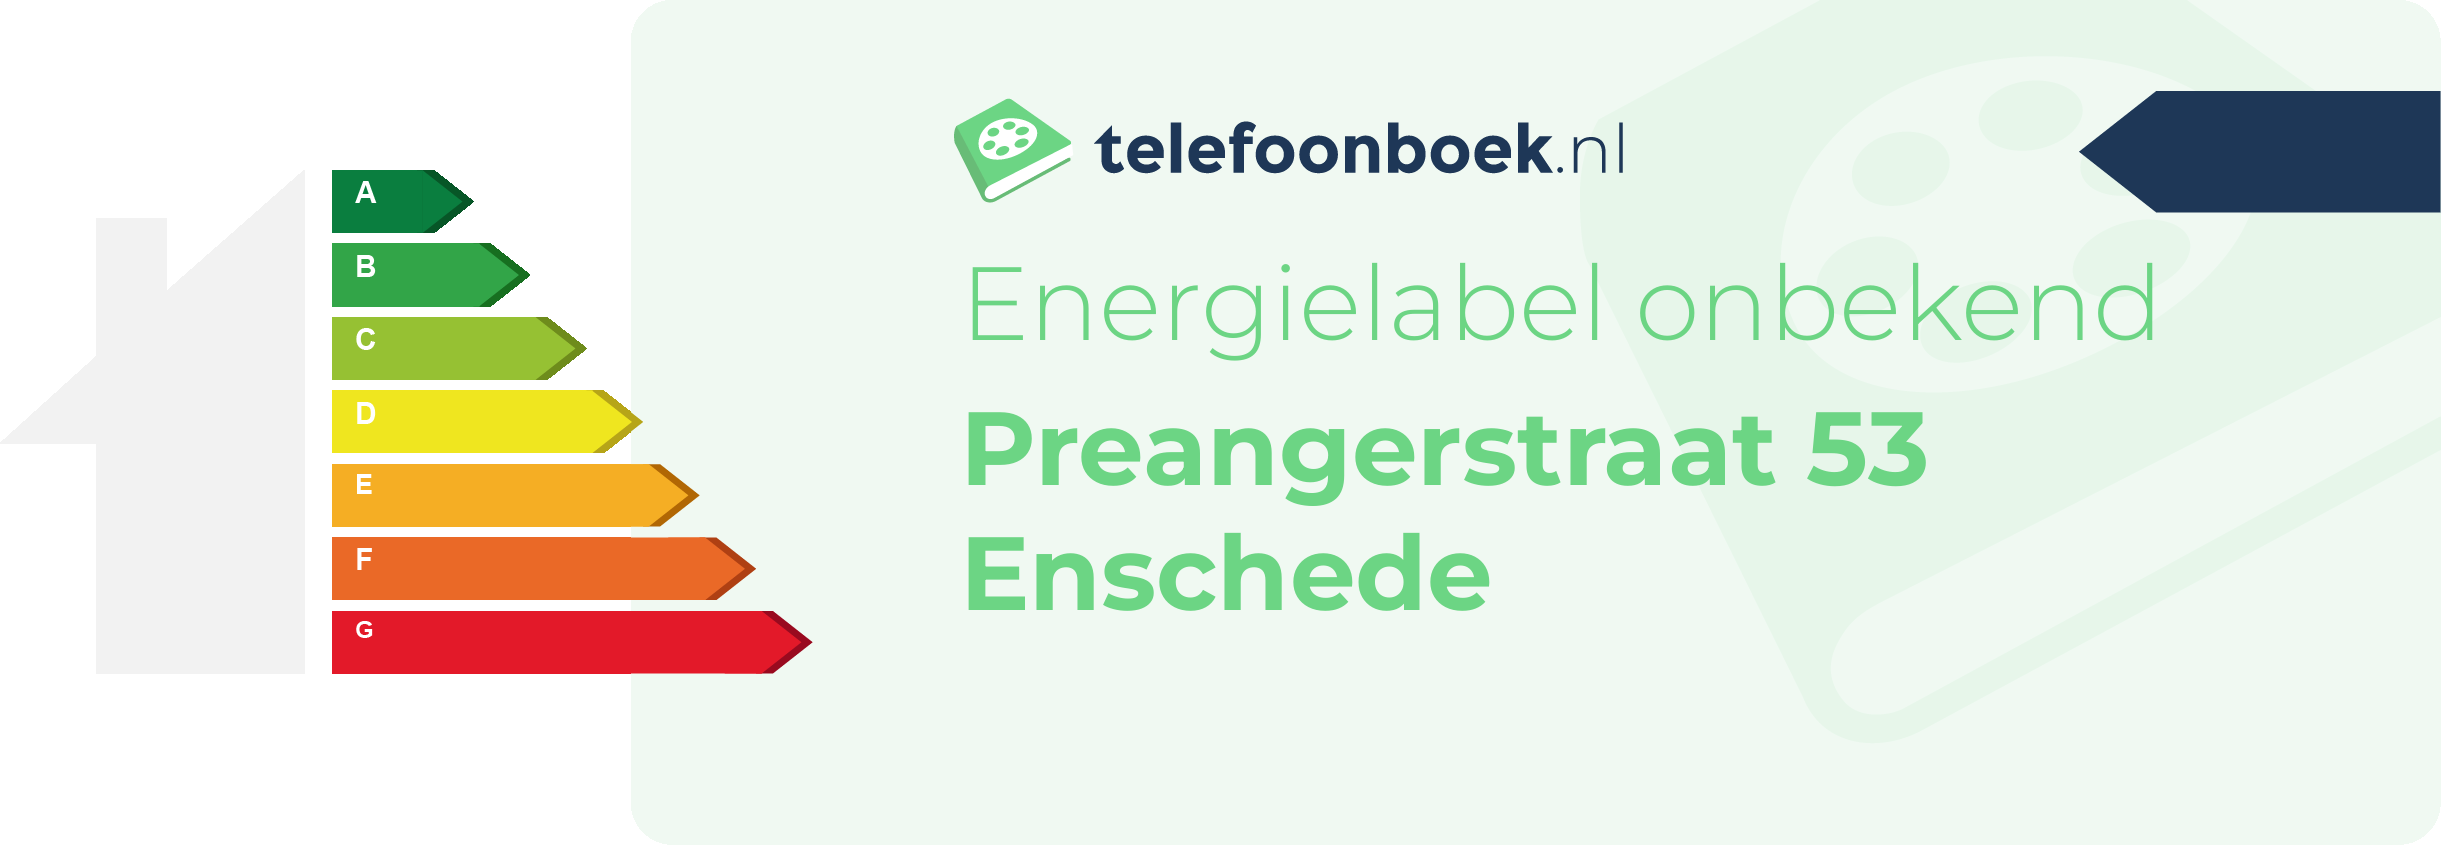 Energielabel Preangerstraat 53 Enschede